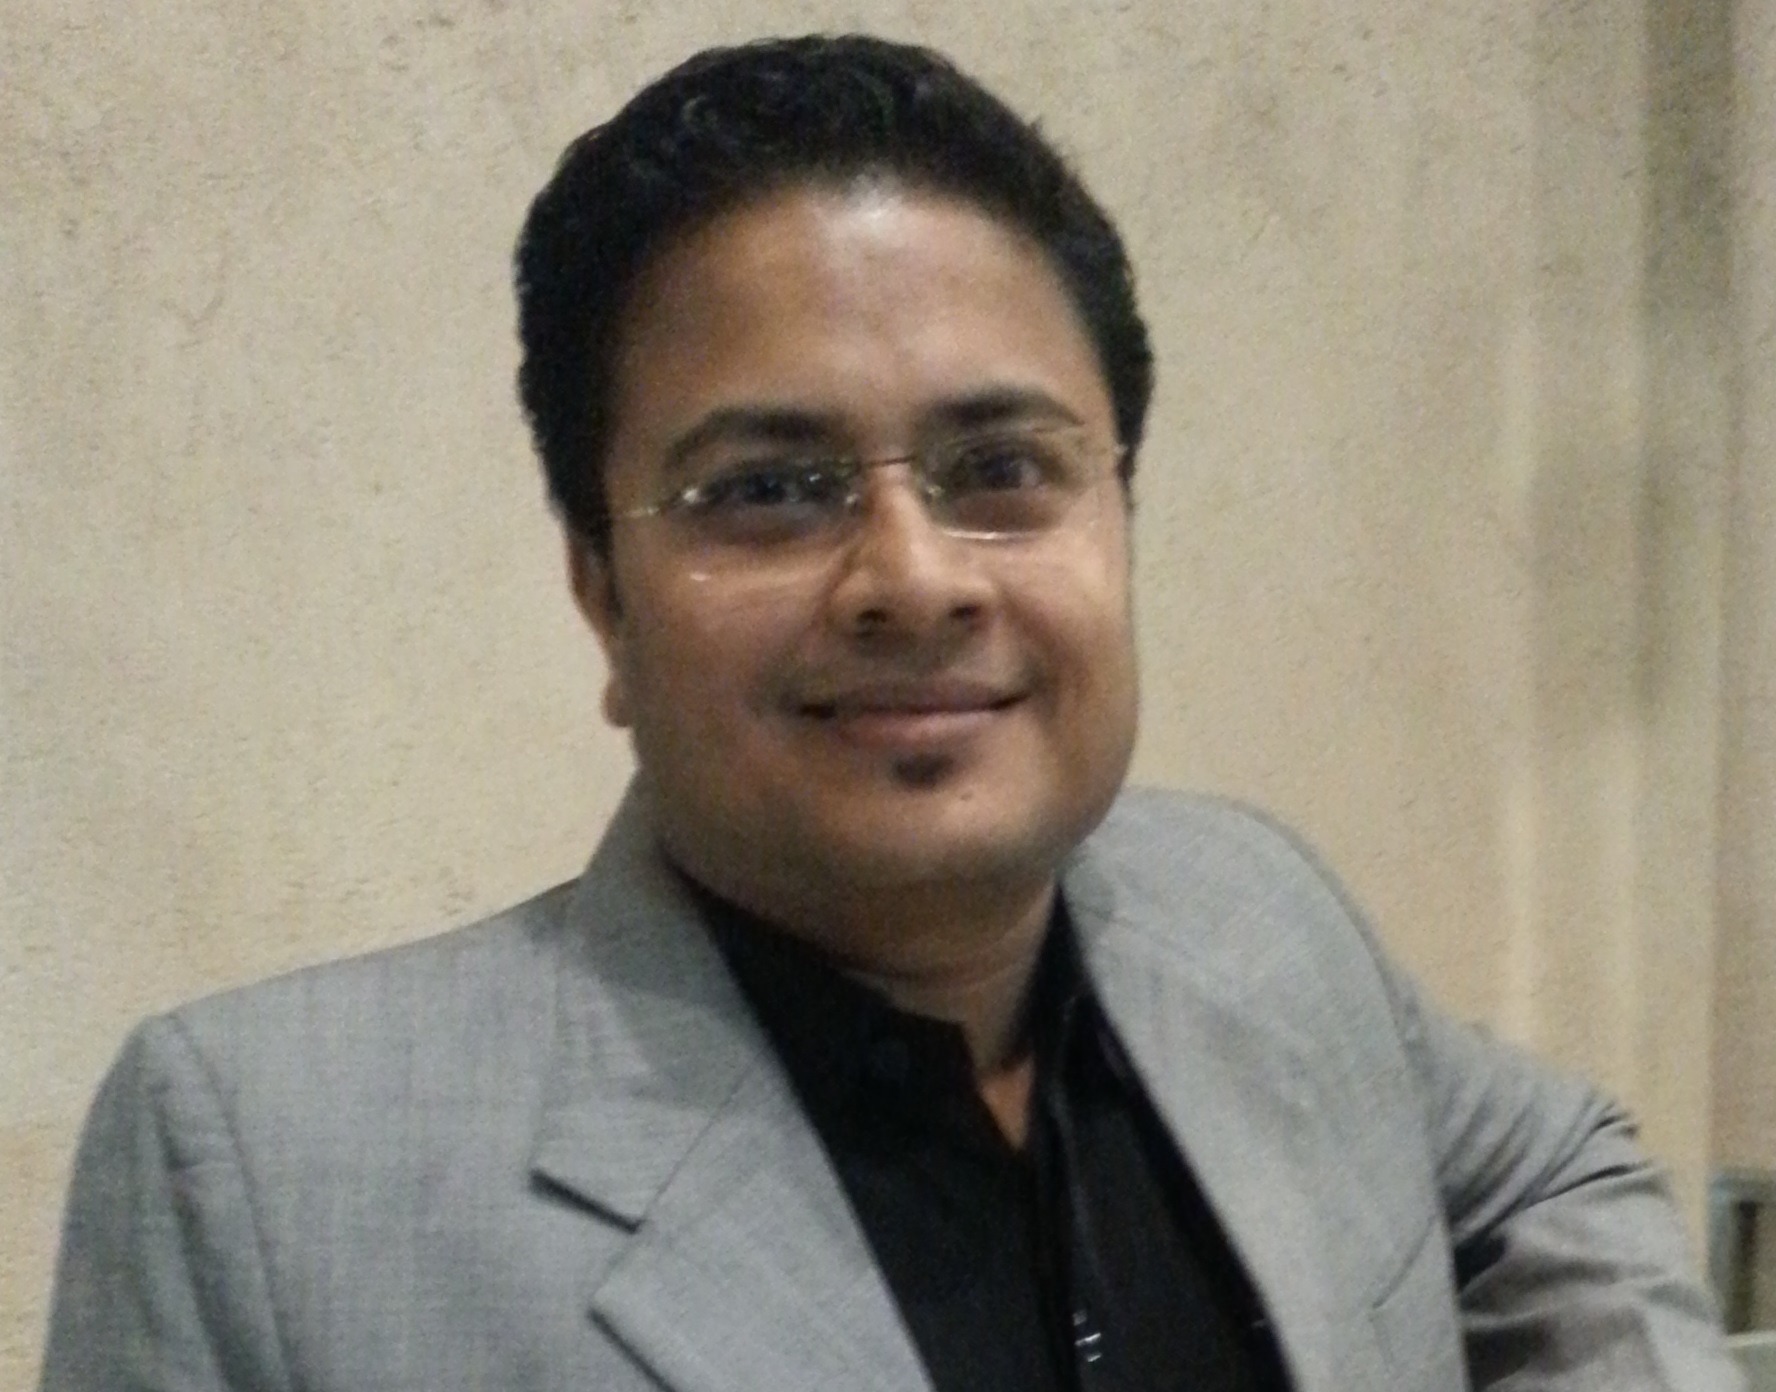 Hitesh Jain